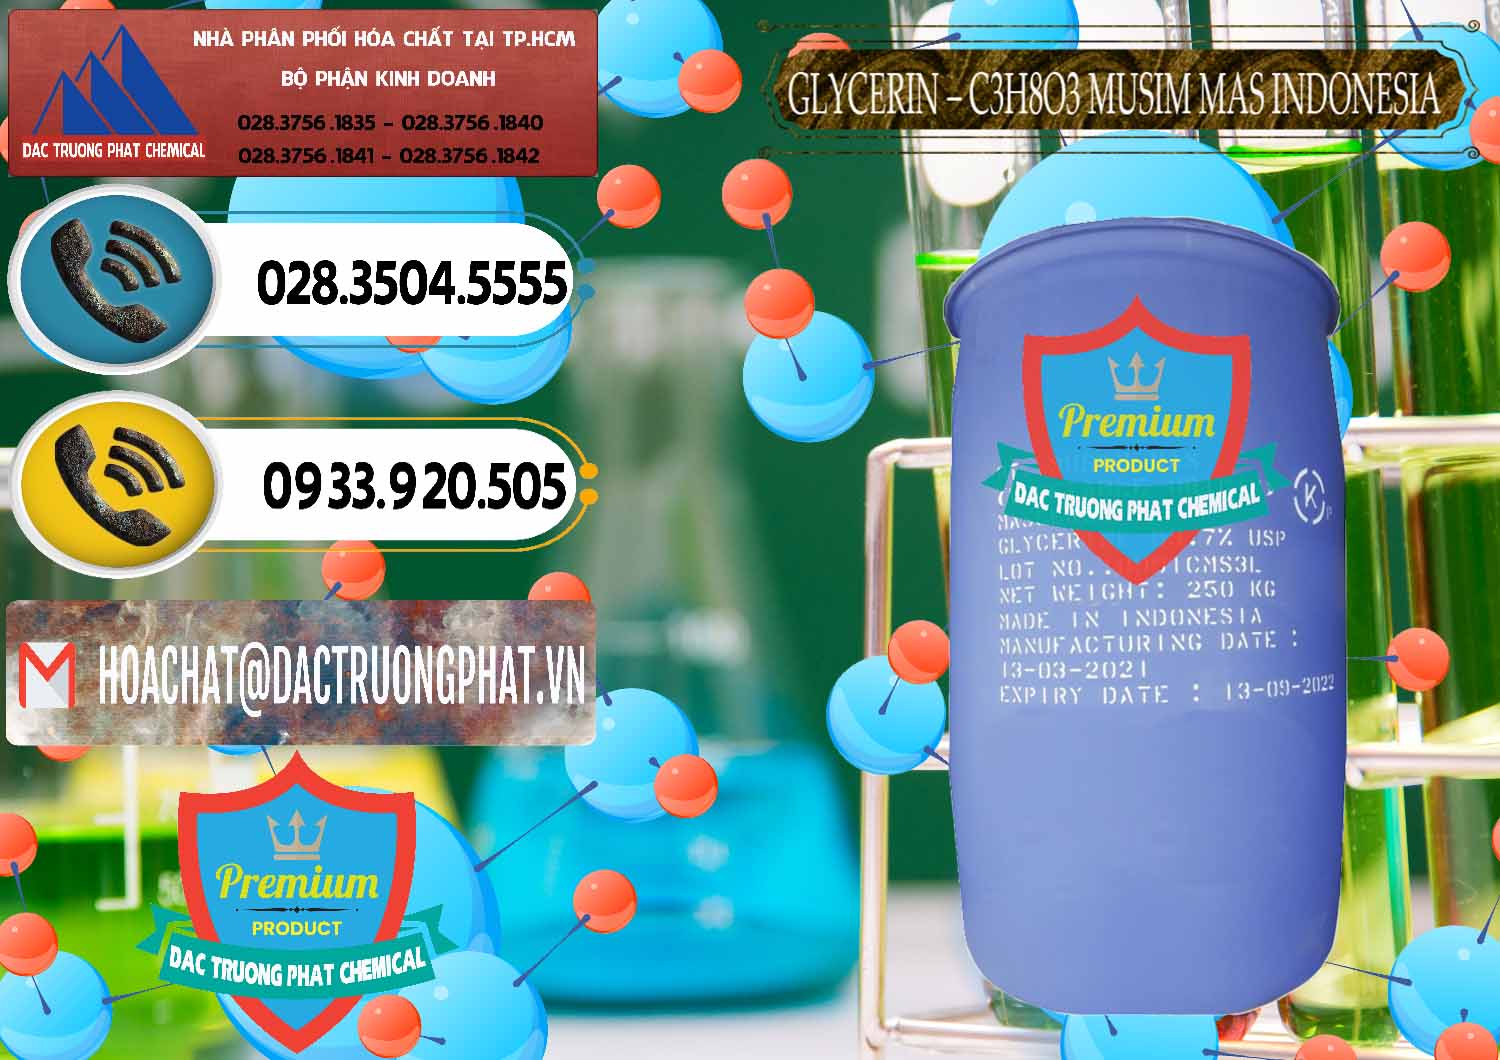 Chuyên cung ứng & bán Glycerin – C3H8O3 99.7% Musim Mas Indonesia - 0272 - Đơn vị chuyên cung ứng - phân phối hóa chất tại TP.HCM - hoachatdetnhuom.vn